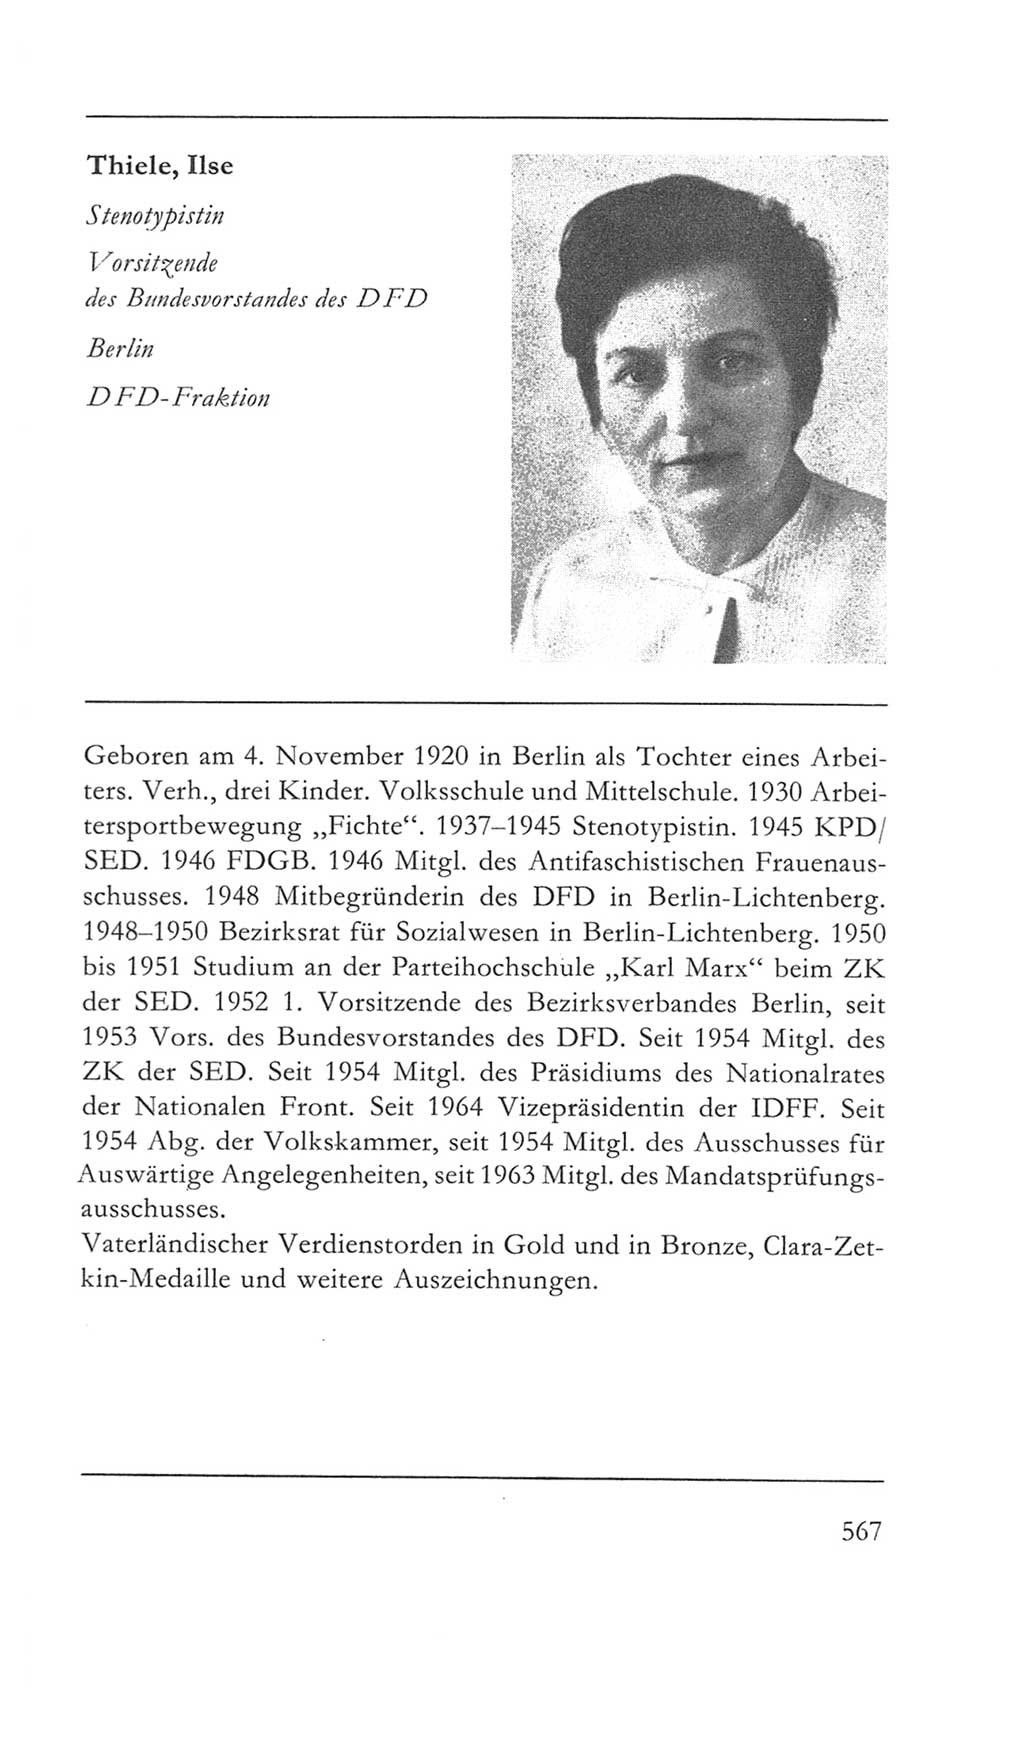 Volkskammer (VK) der Deutschen Demokratischen Republik (DDR) 5. Wahlperiode 1967-1971, Seite 567 (VK. DDR 5. WP. 1967-1971, S. 567)